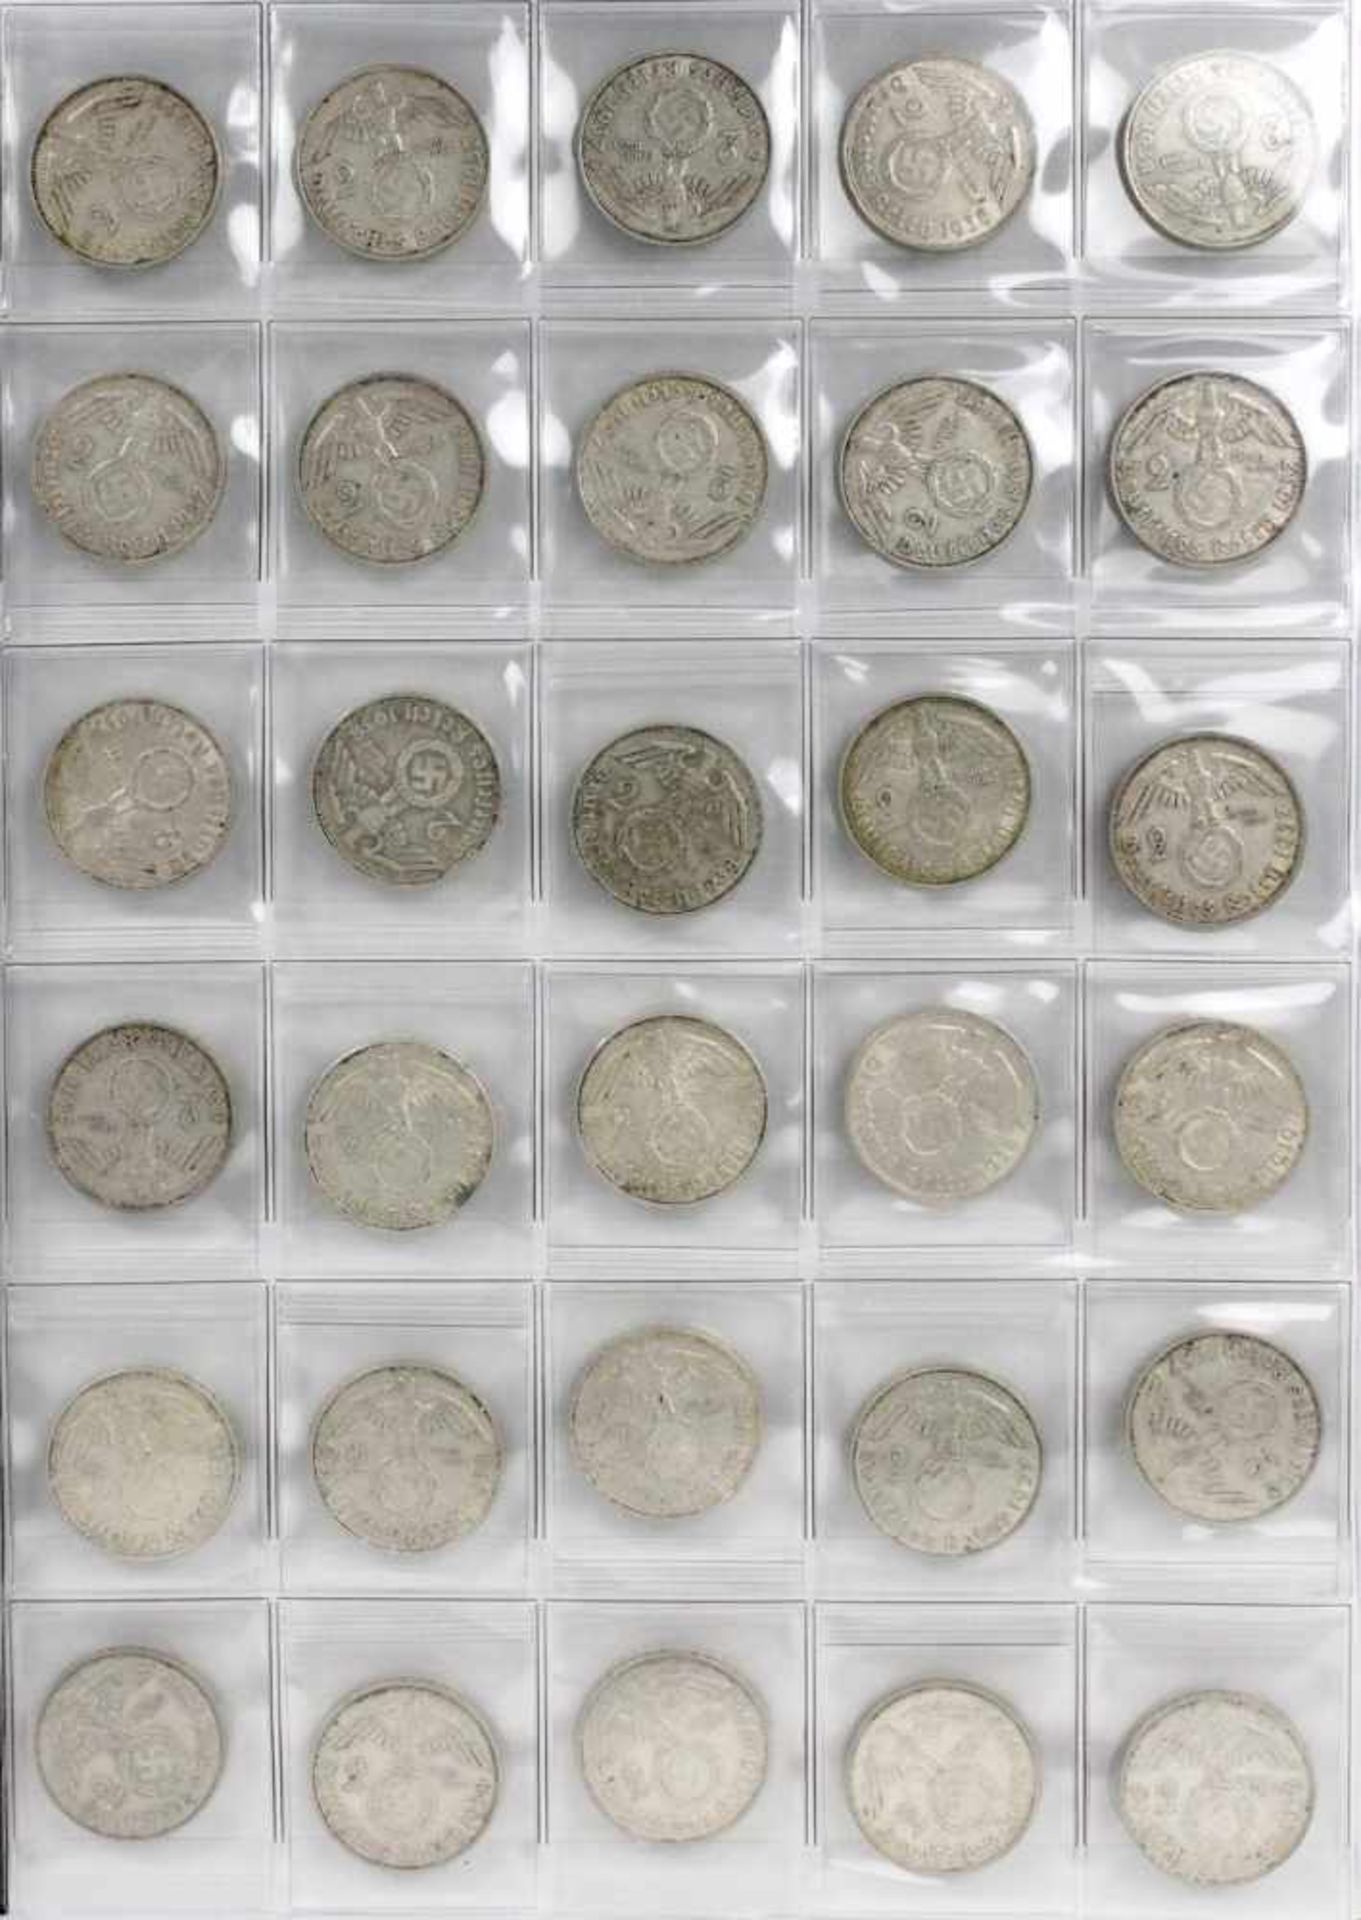 30 mal 2 Reichsmark " Paul von Hindenburg " Silbermünzen< - Bild 5 aus 5